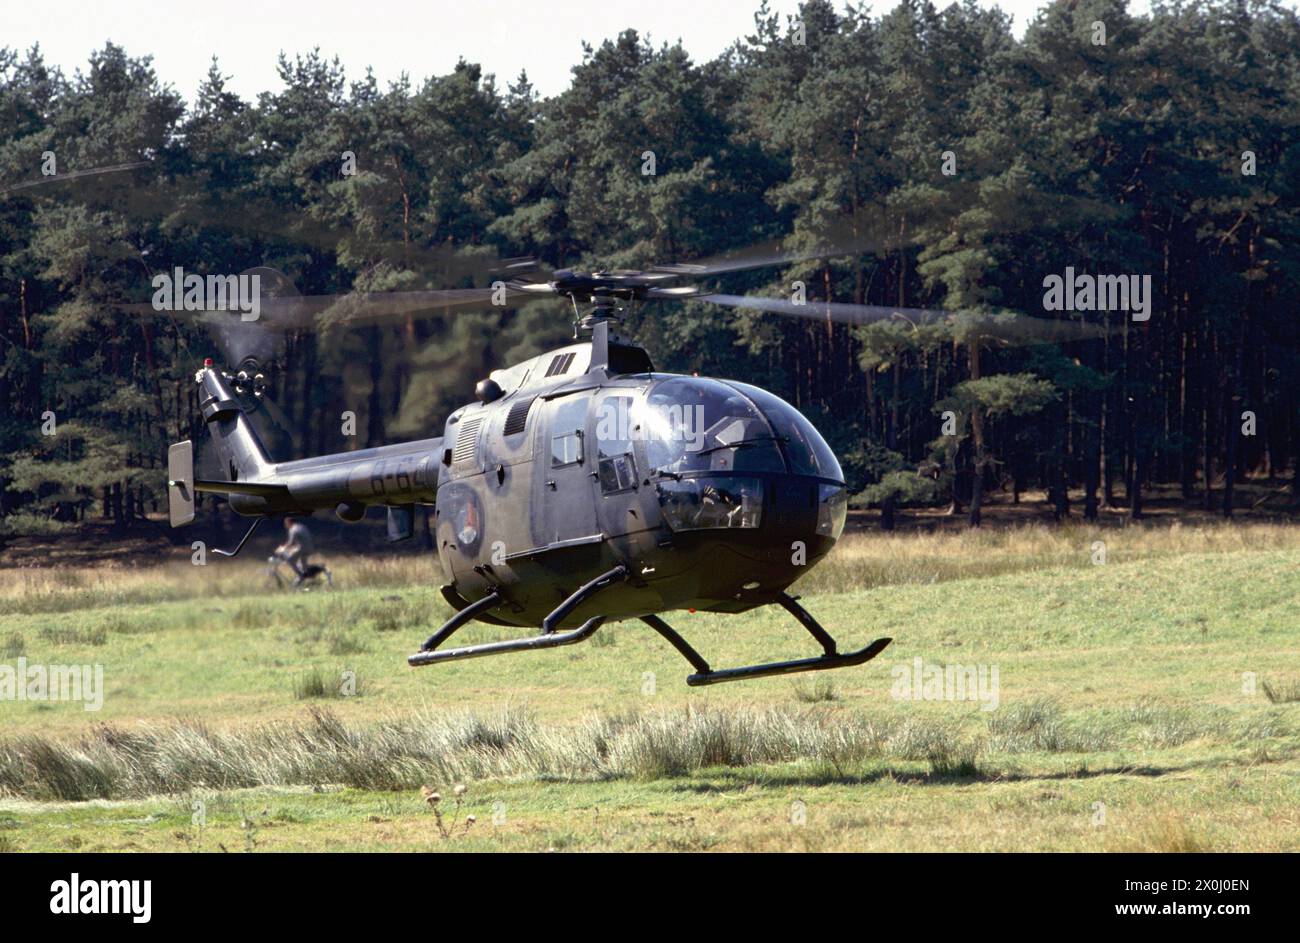 - Exercices de l'OTAN en Allemagne, hélicoptère de l'armée néerlandaise MBB Bo 105 (septembre 1991) - esercitazioni NATO in Germania, elicottero MBB Bo 105 Esercito Olandese (settembre 1991) Banque D'Images